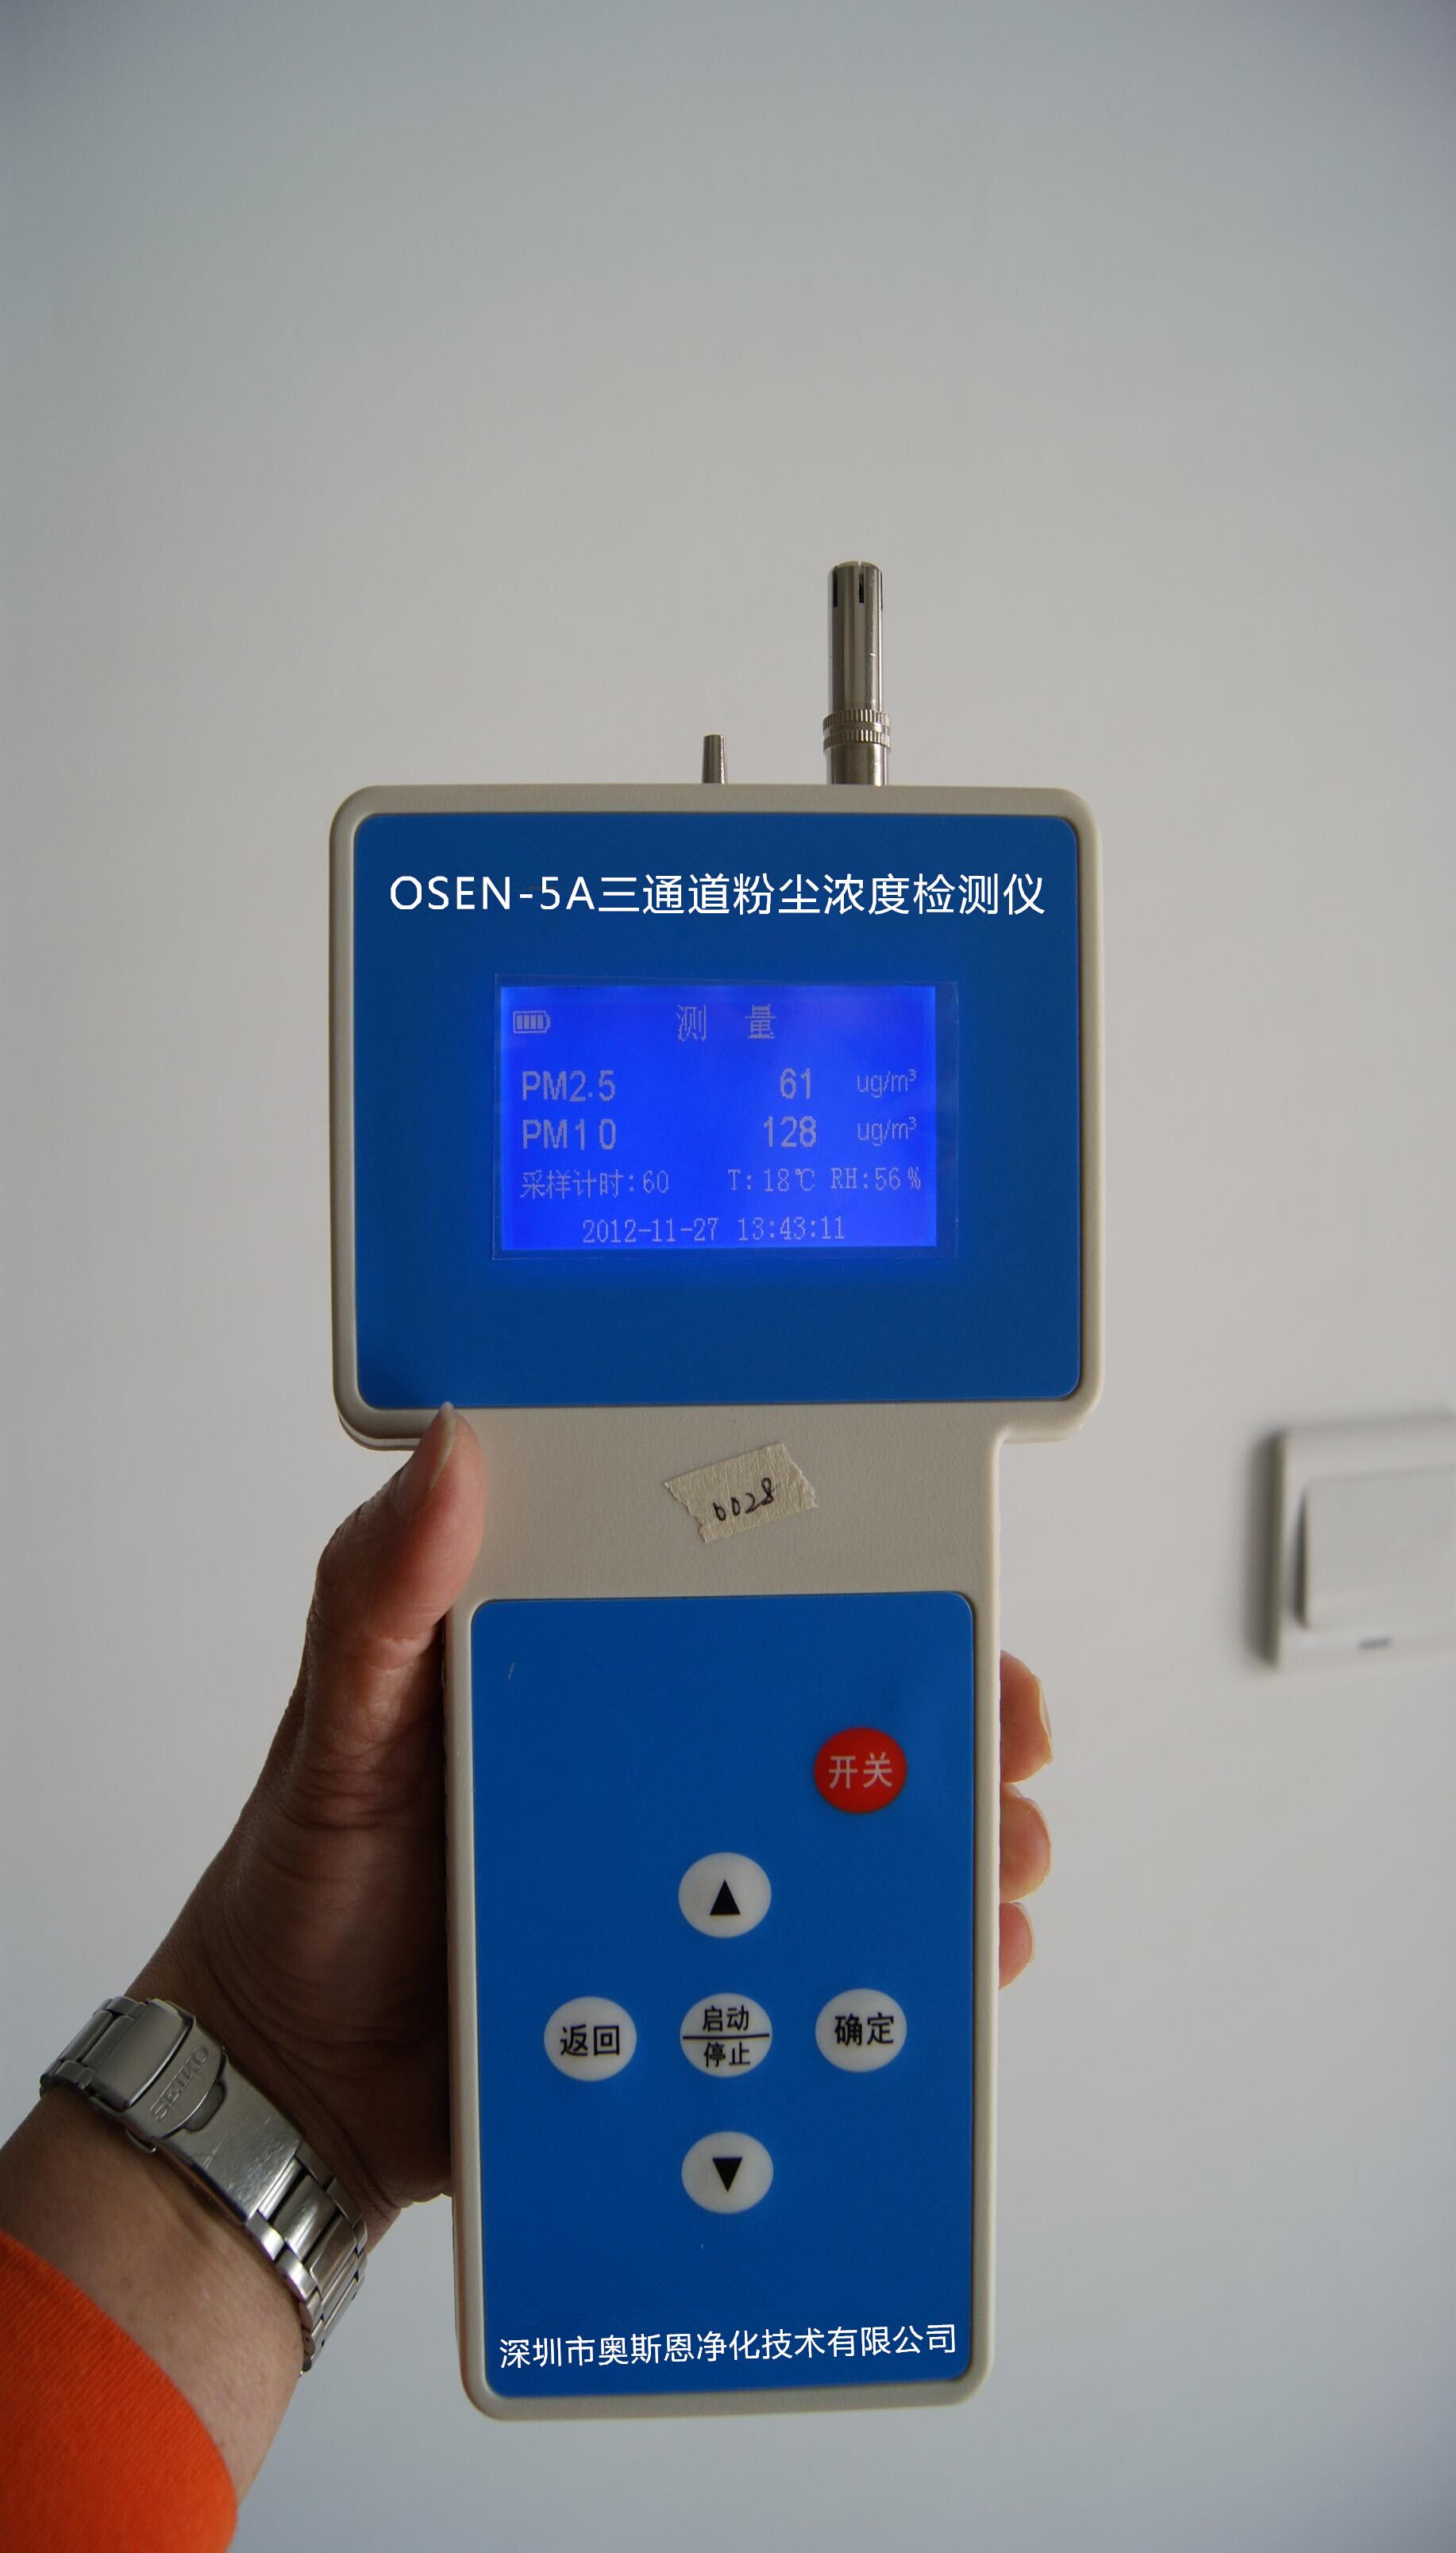 手持式OSEN-5A彩屏三通道粉尘浓度检测仪